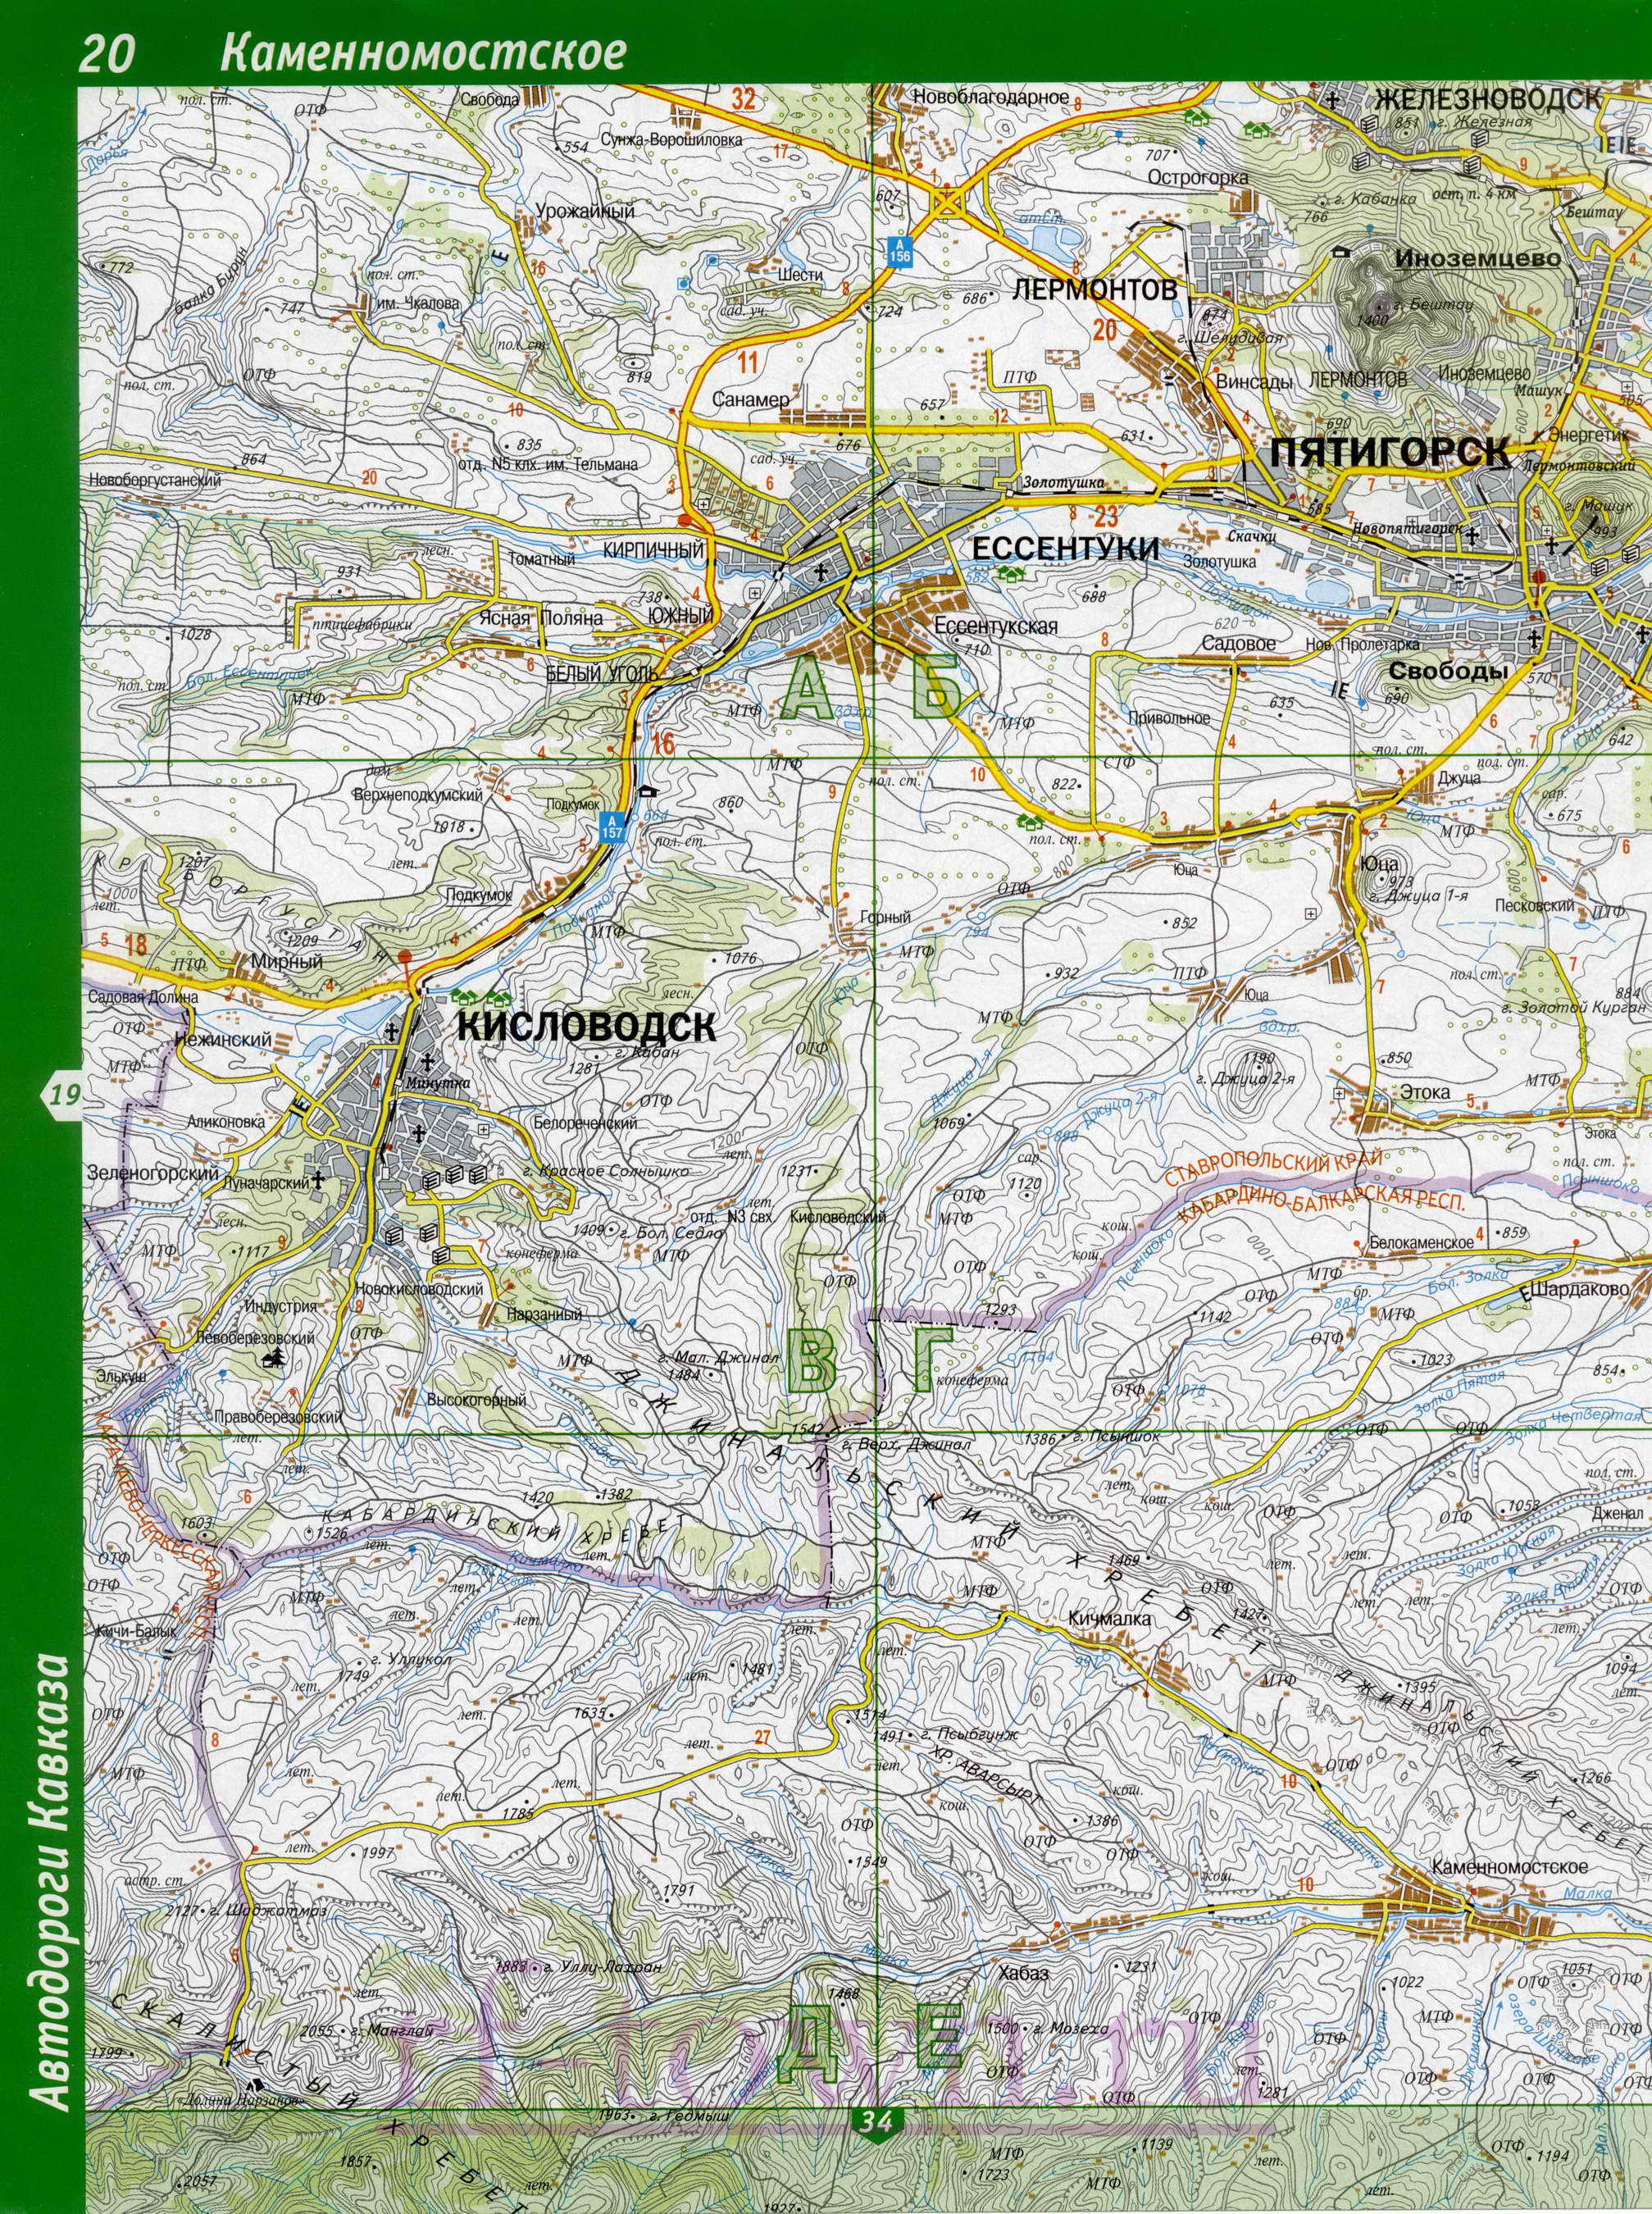 Карта Кабардино-Балкарии. Подробная топографическая карта Кабардино-Балкарии. Карта Кабардино-Балкарии масштаба 1см:2км, A0 - 